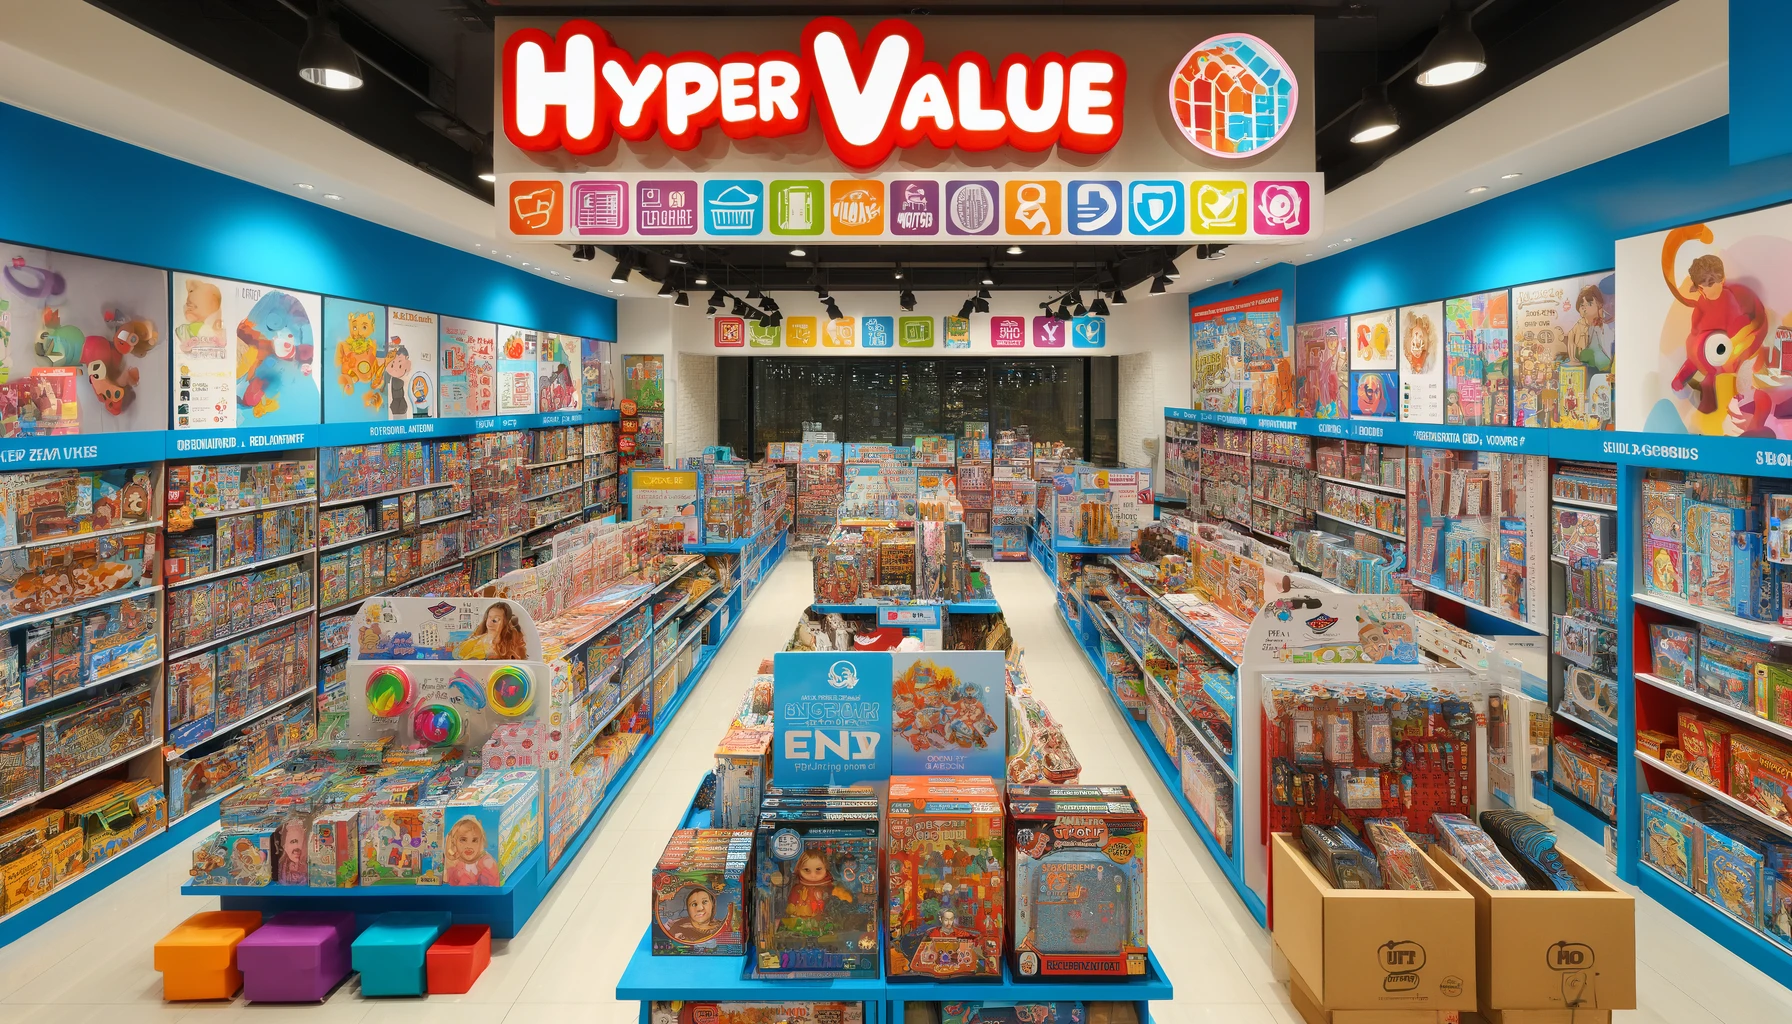 היפר ווליו: היעד המושלם לצעצועים במחירים משתלמים